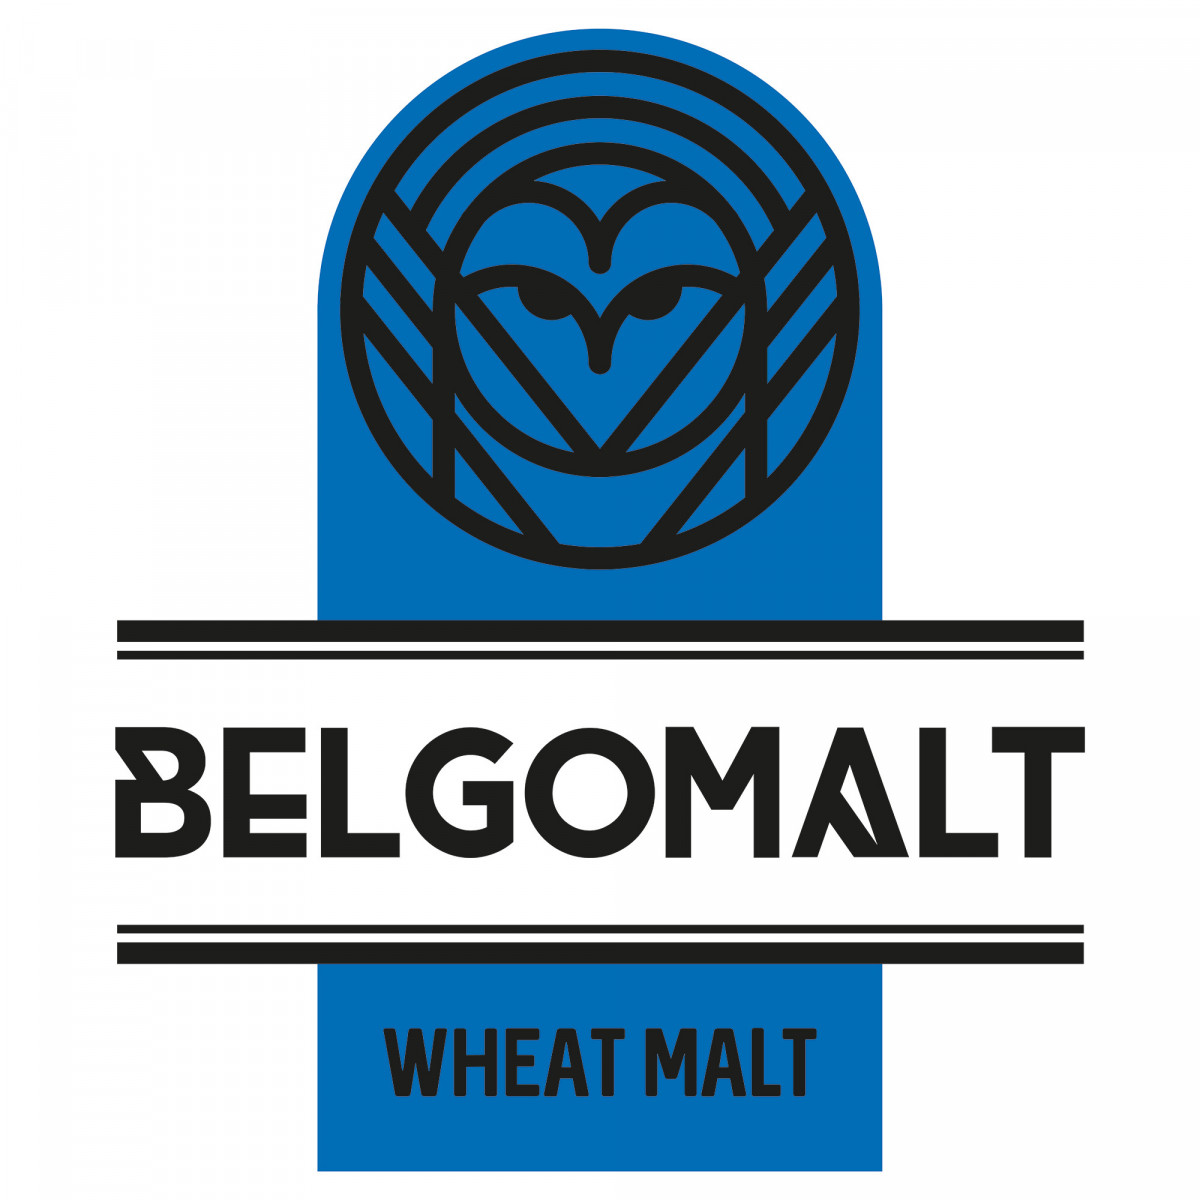 Belgomalt Malt de blé 4,5 - 5,5 EBC 5 kg